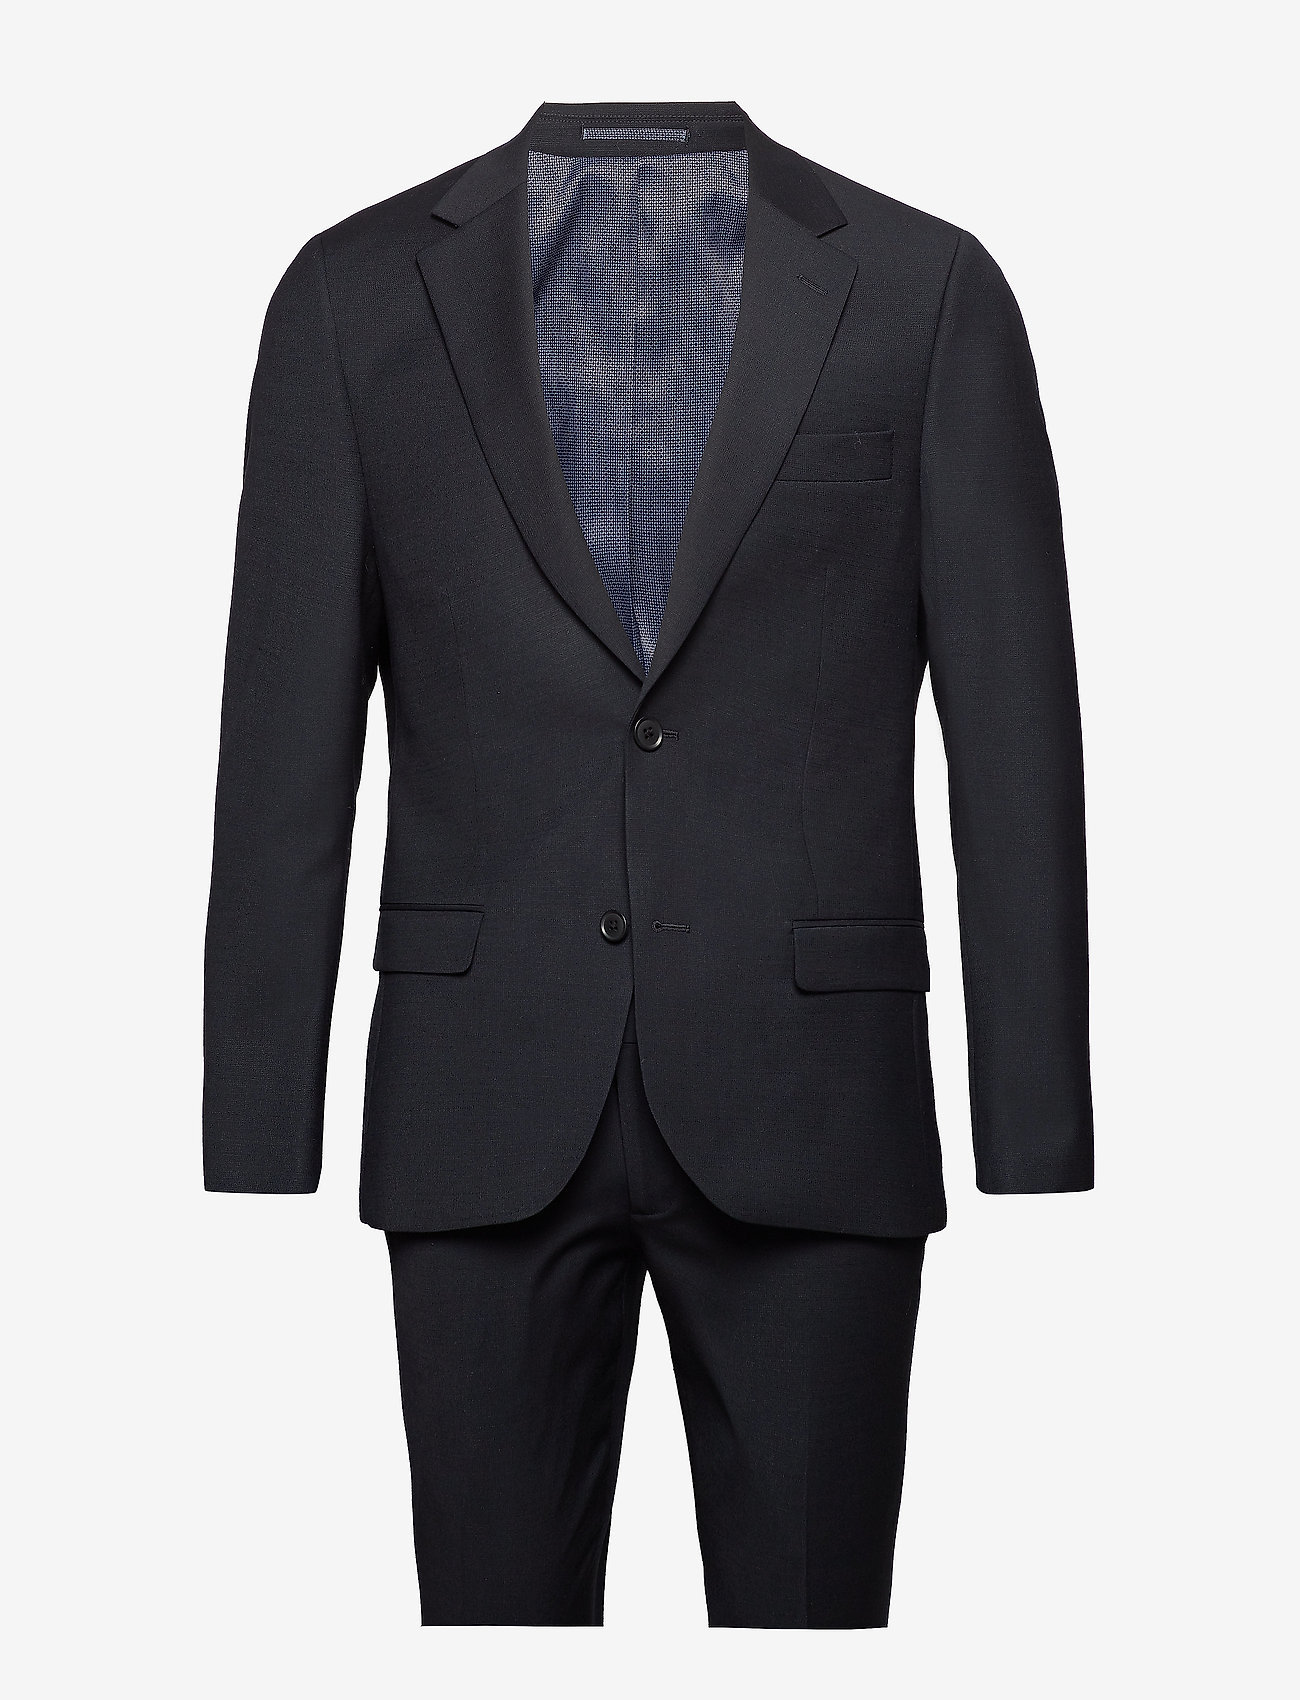 Bruun & Stengade - Hardmann, Suit Set - kostuums met dubbele knopen - black - 0